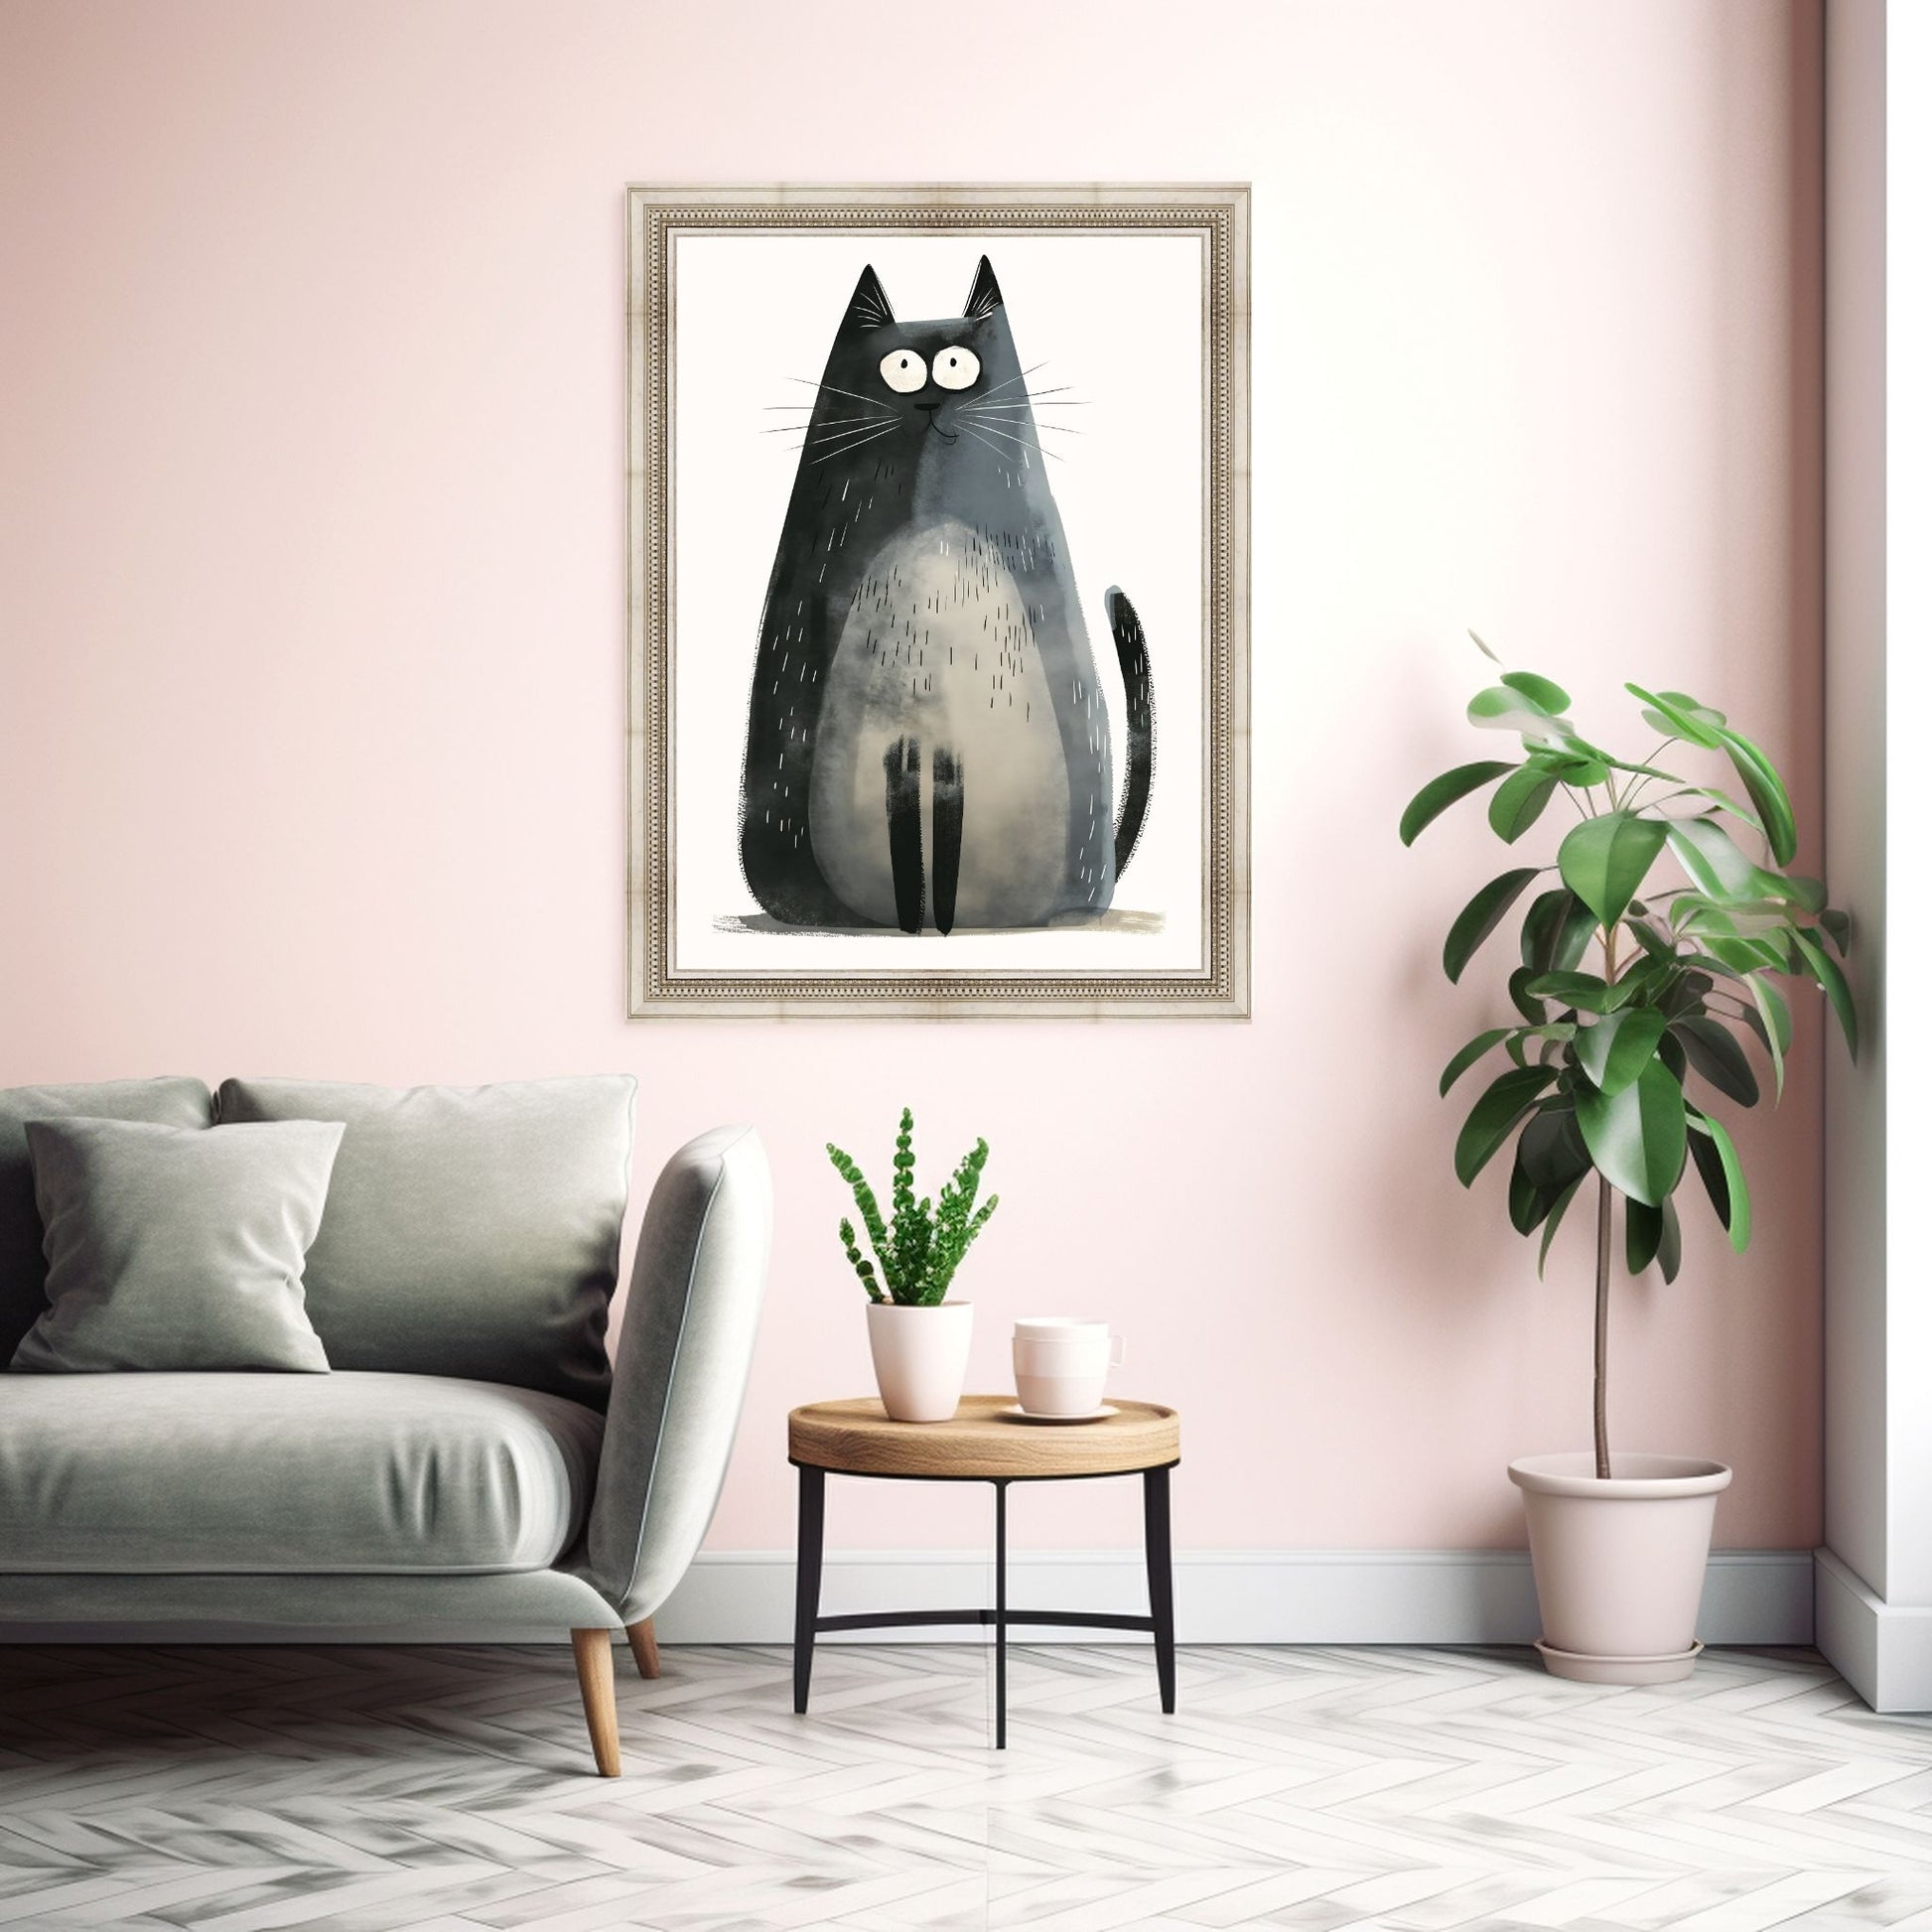 Grafisk illustrasjon av en grå, stor katt som sitter. Den har et stolt uttrykk. Motivet fås som plakat og lerret. Illustrasjonsbilde av plakat i ramme.